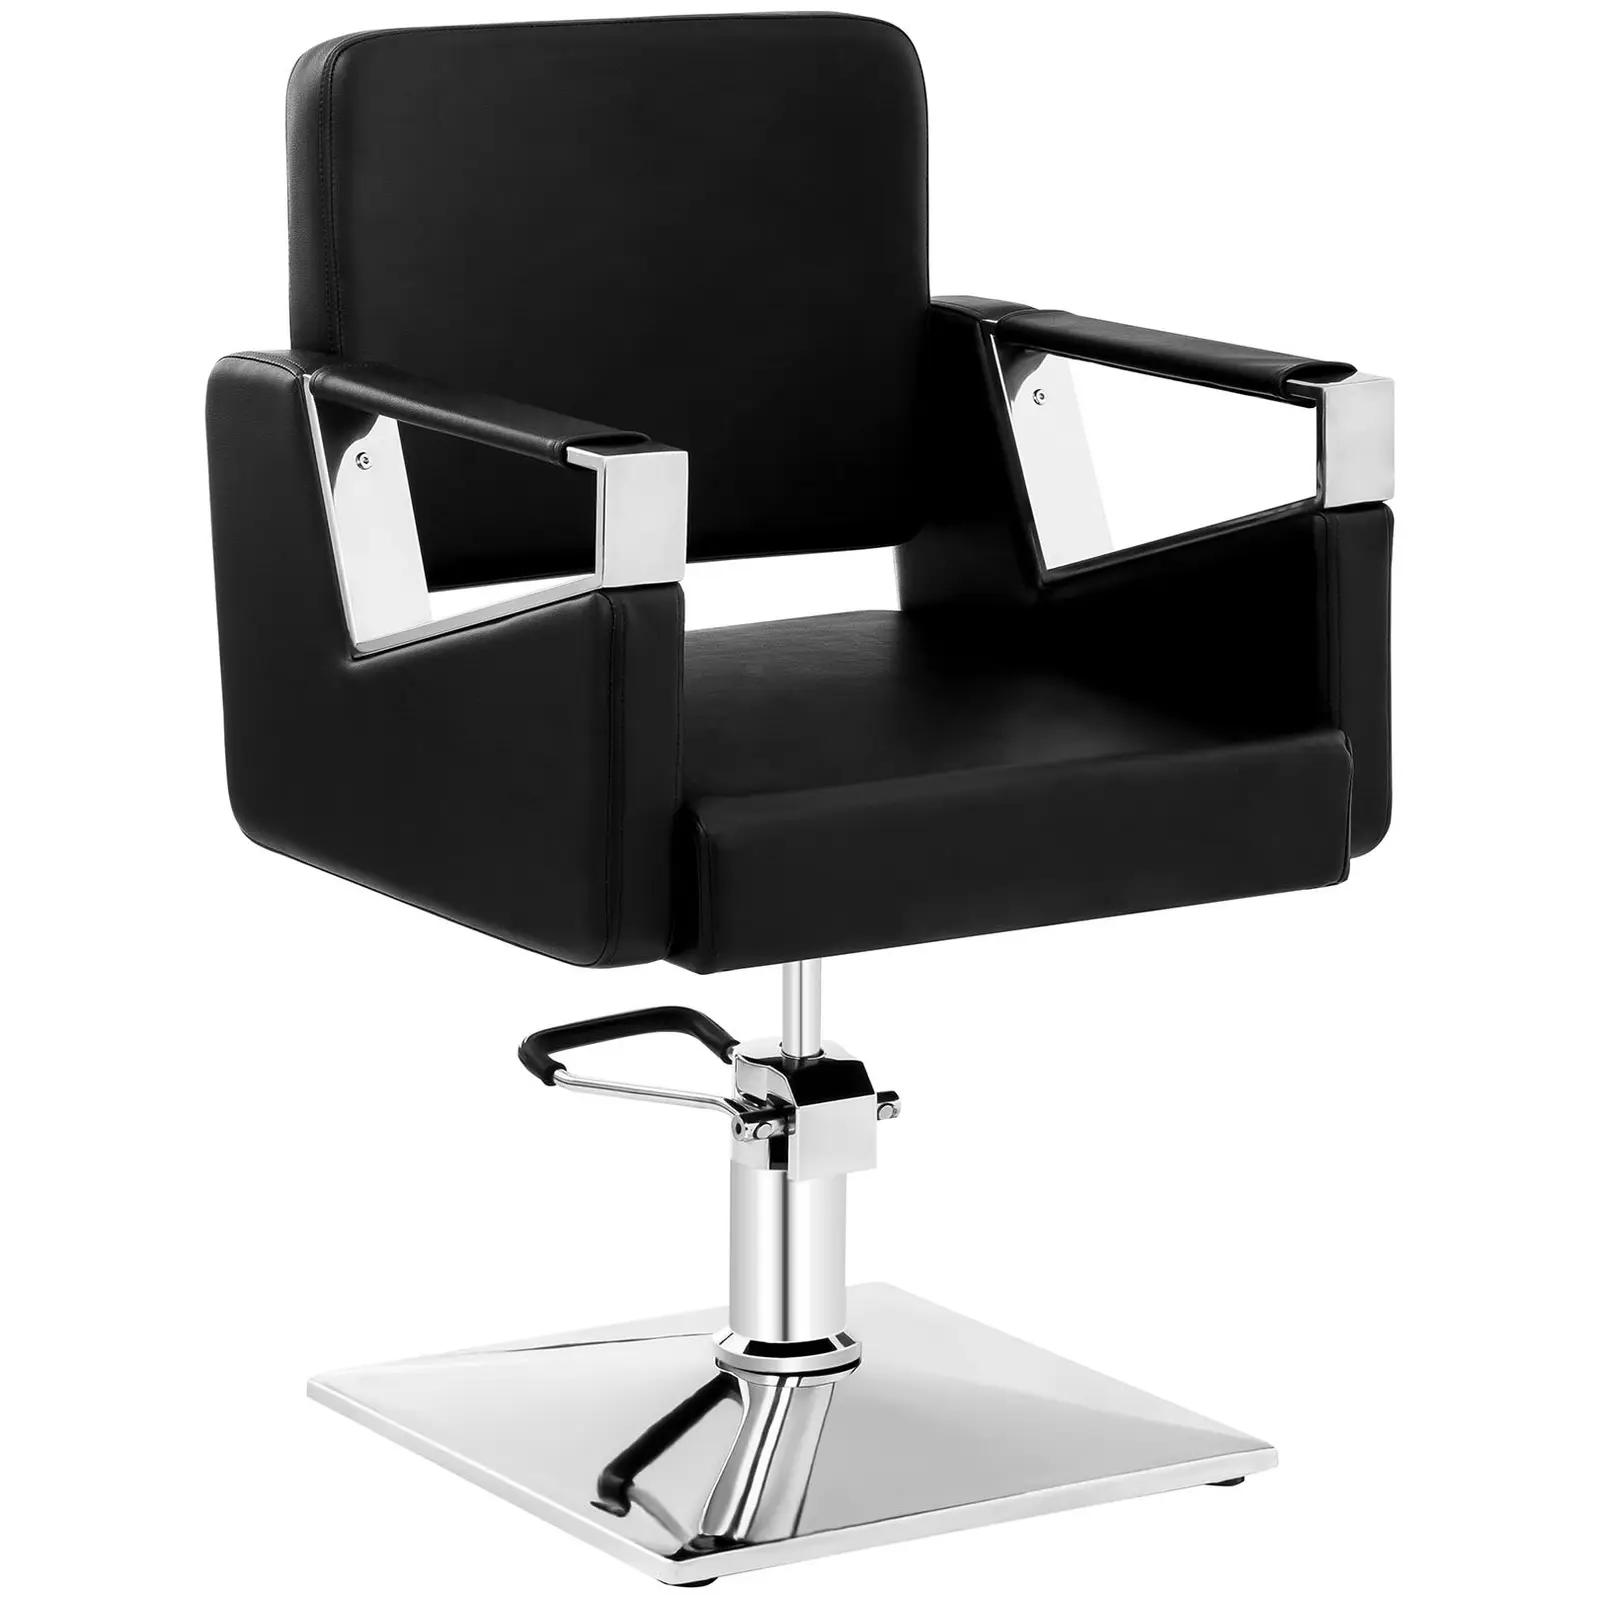 Fodrász szék - 445–550 mm - 200 kg - Black